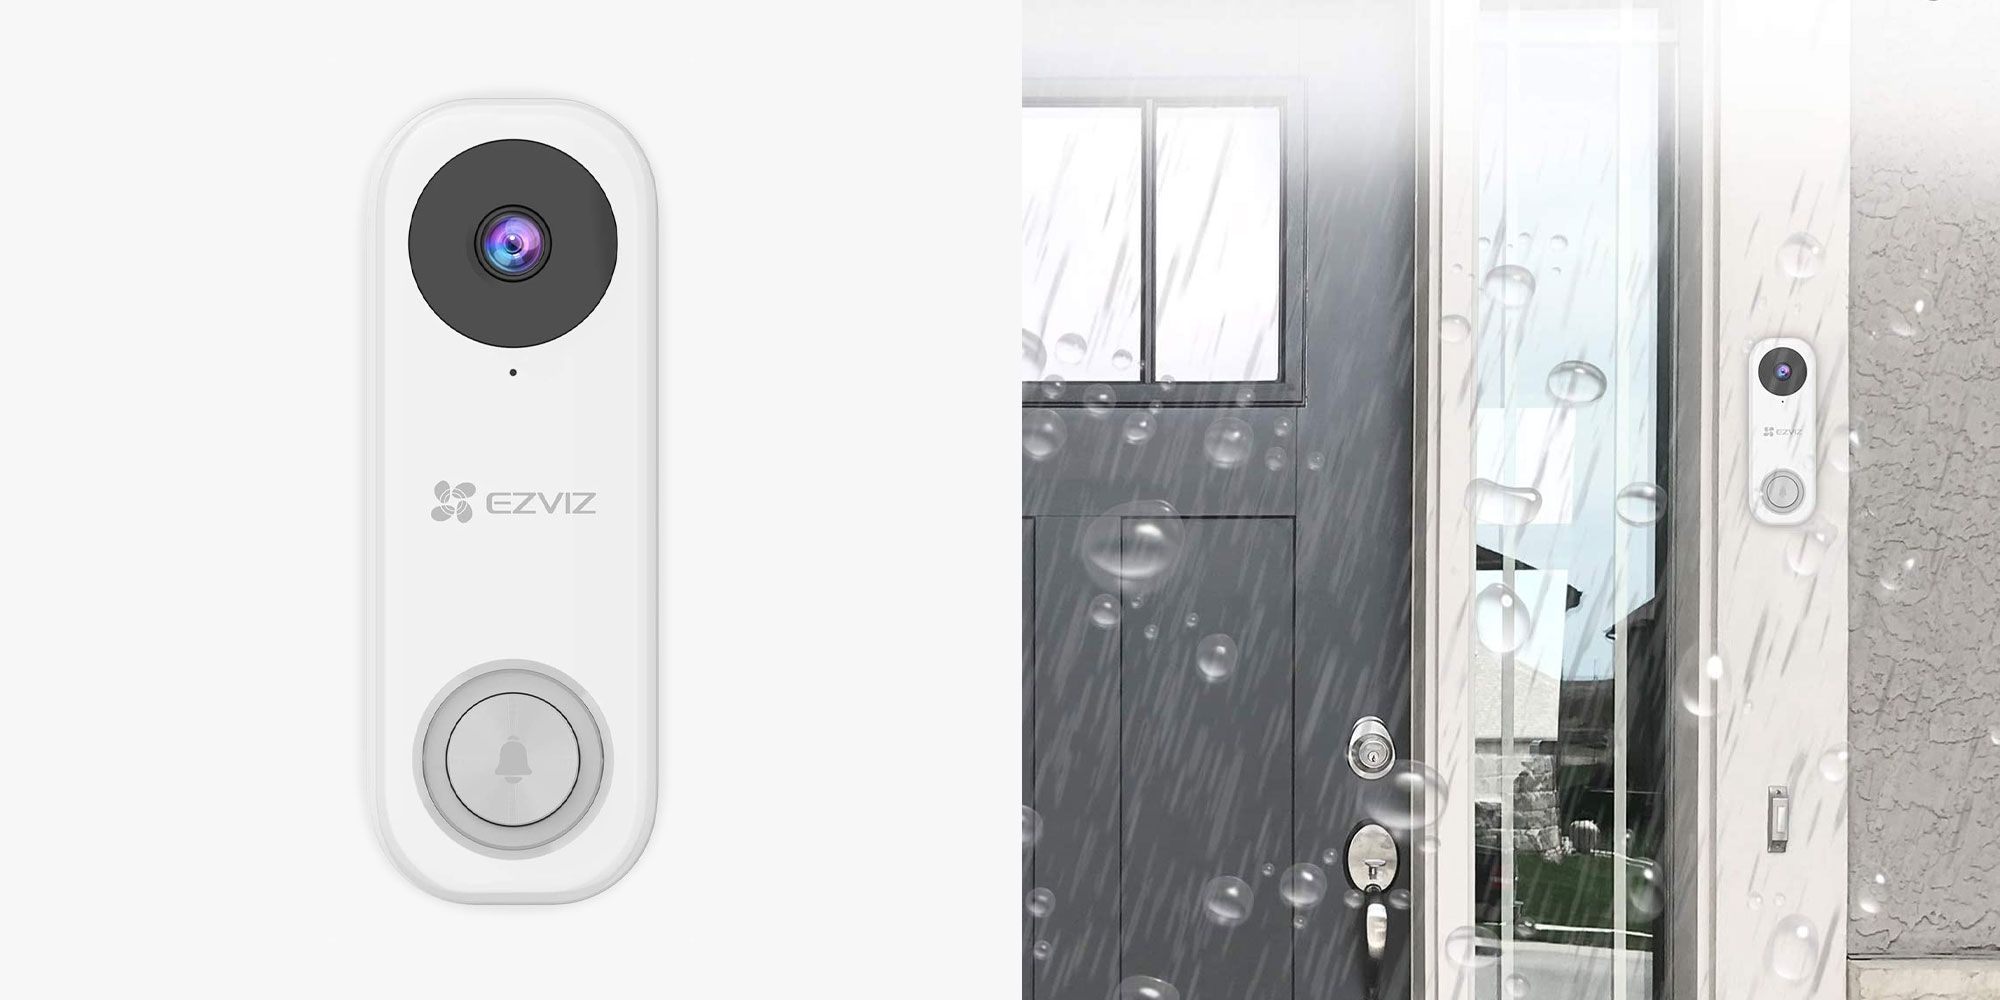 Product images of the EZVIZ Video Doorbell Camera.